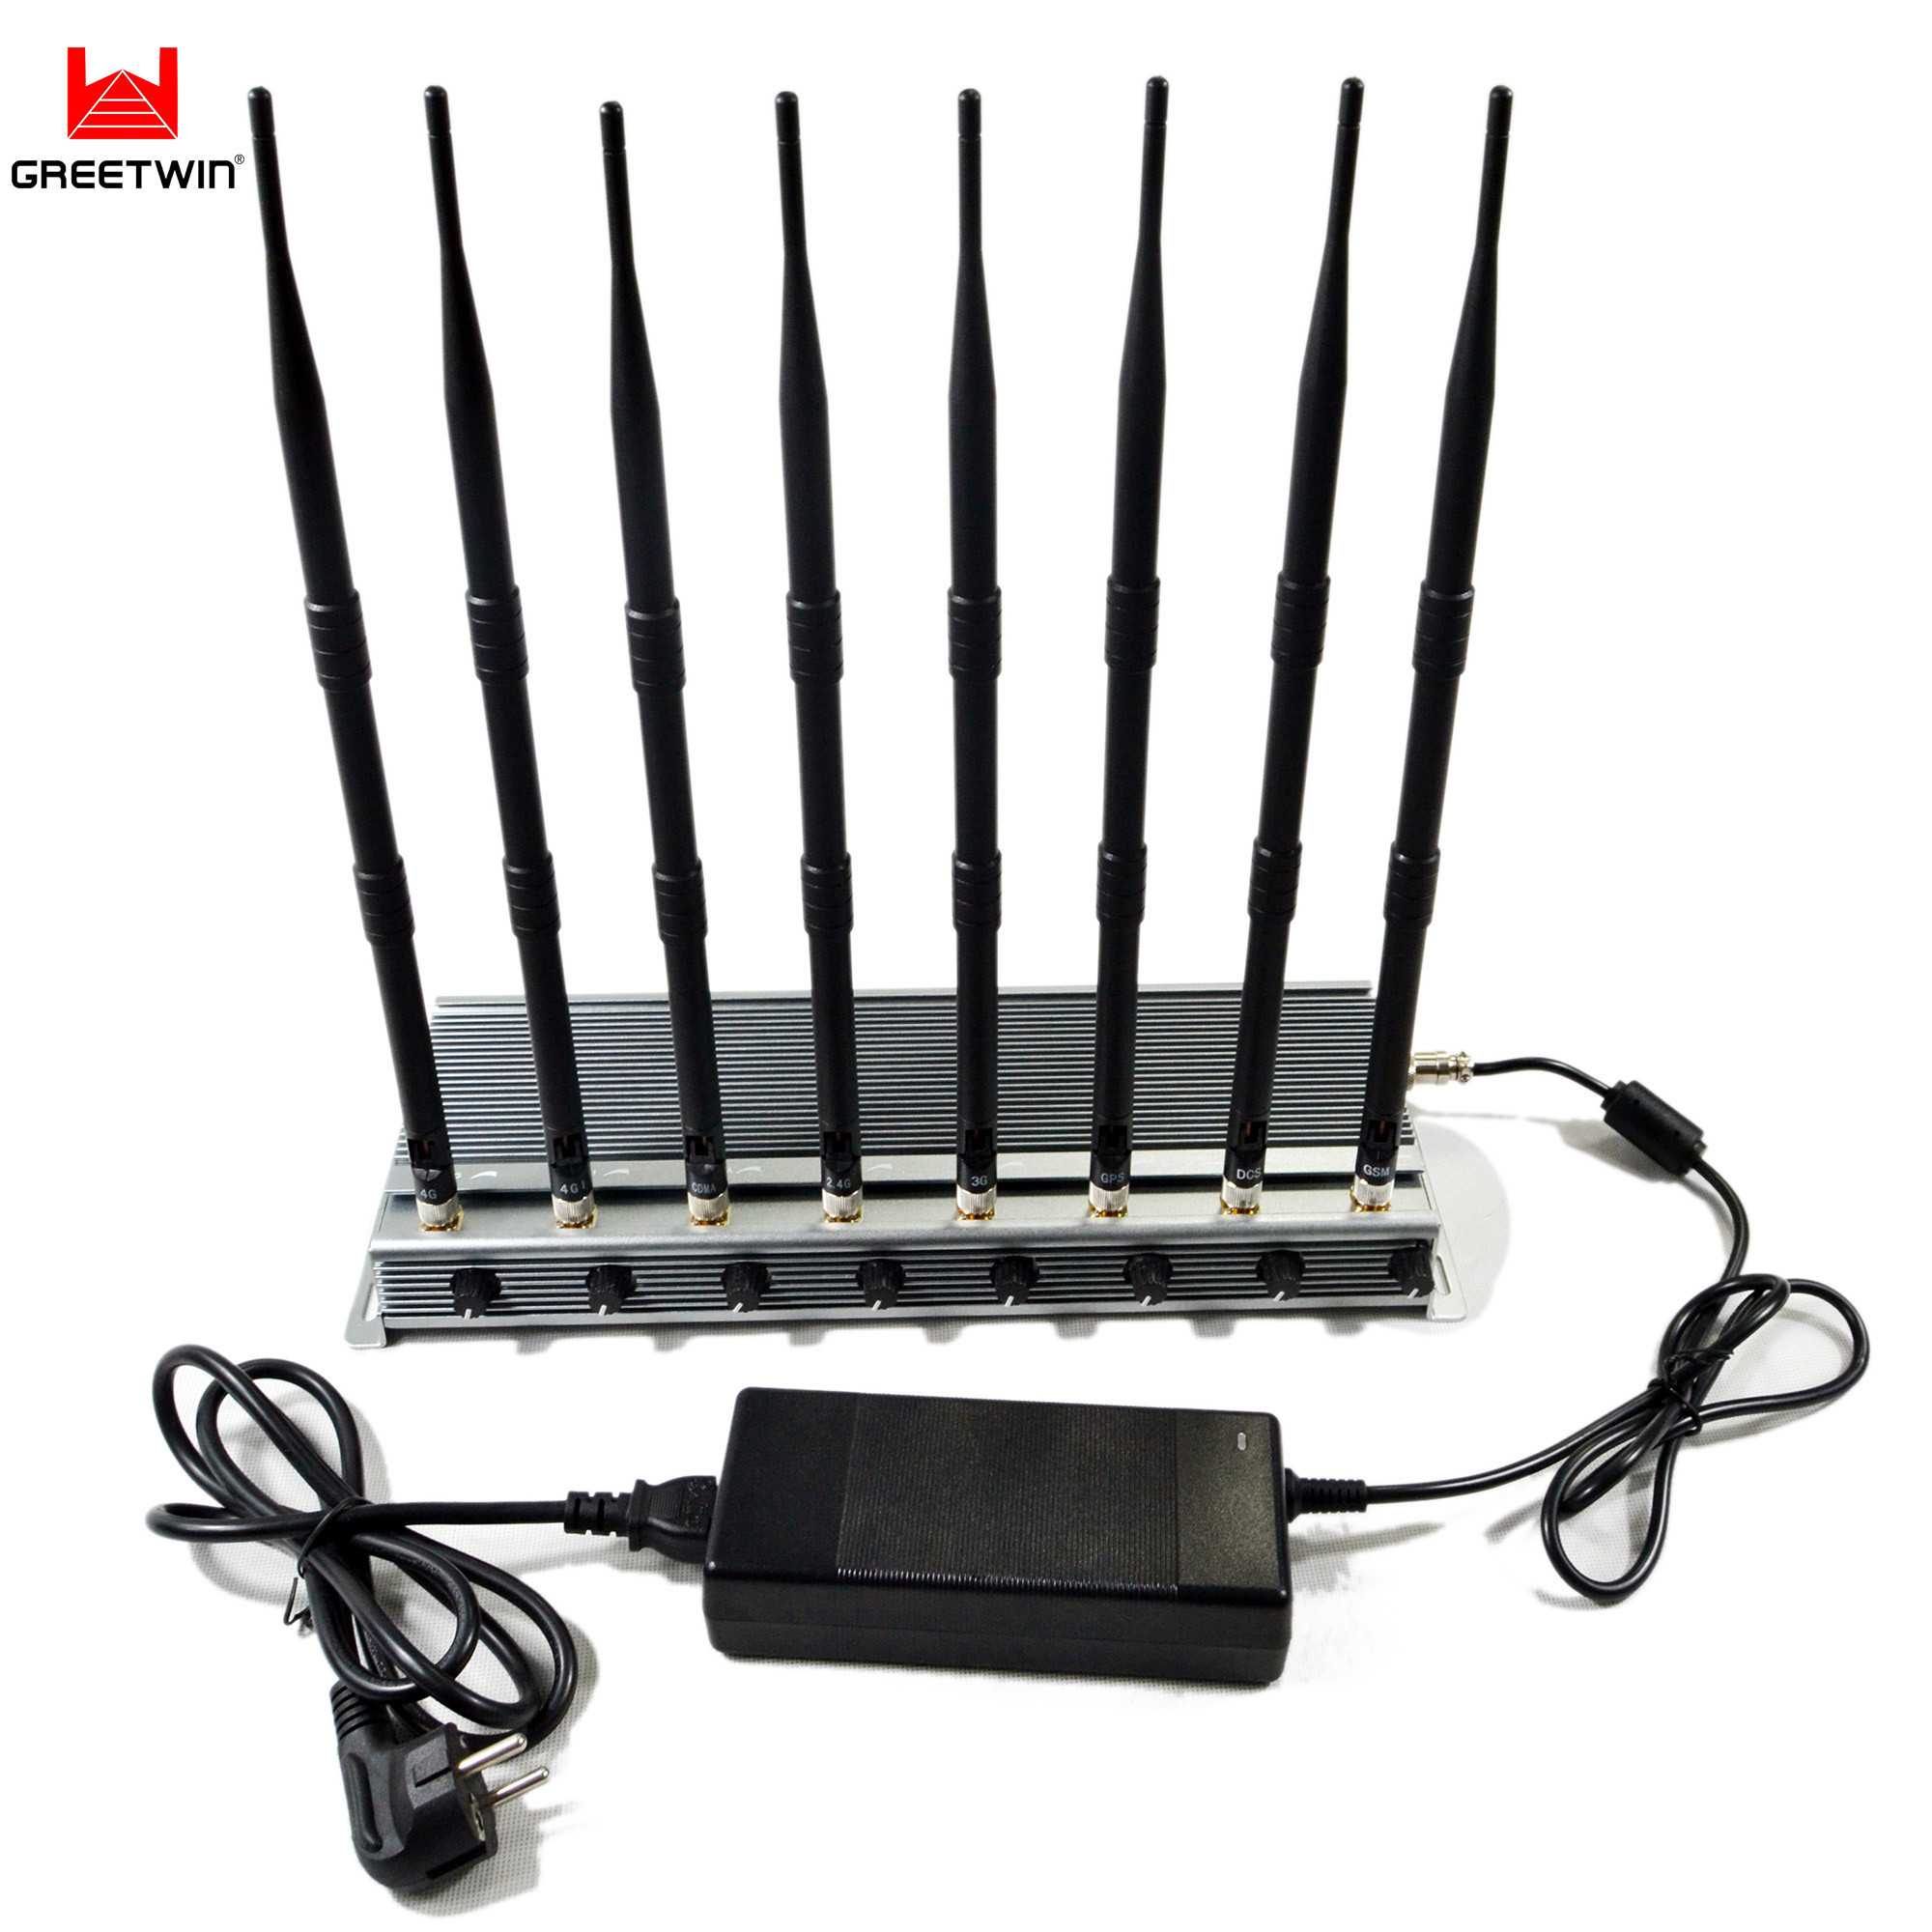 Bloqueador de sinal móvel WiFi 2.4G ajustável 60m 46W